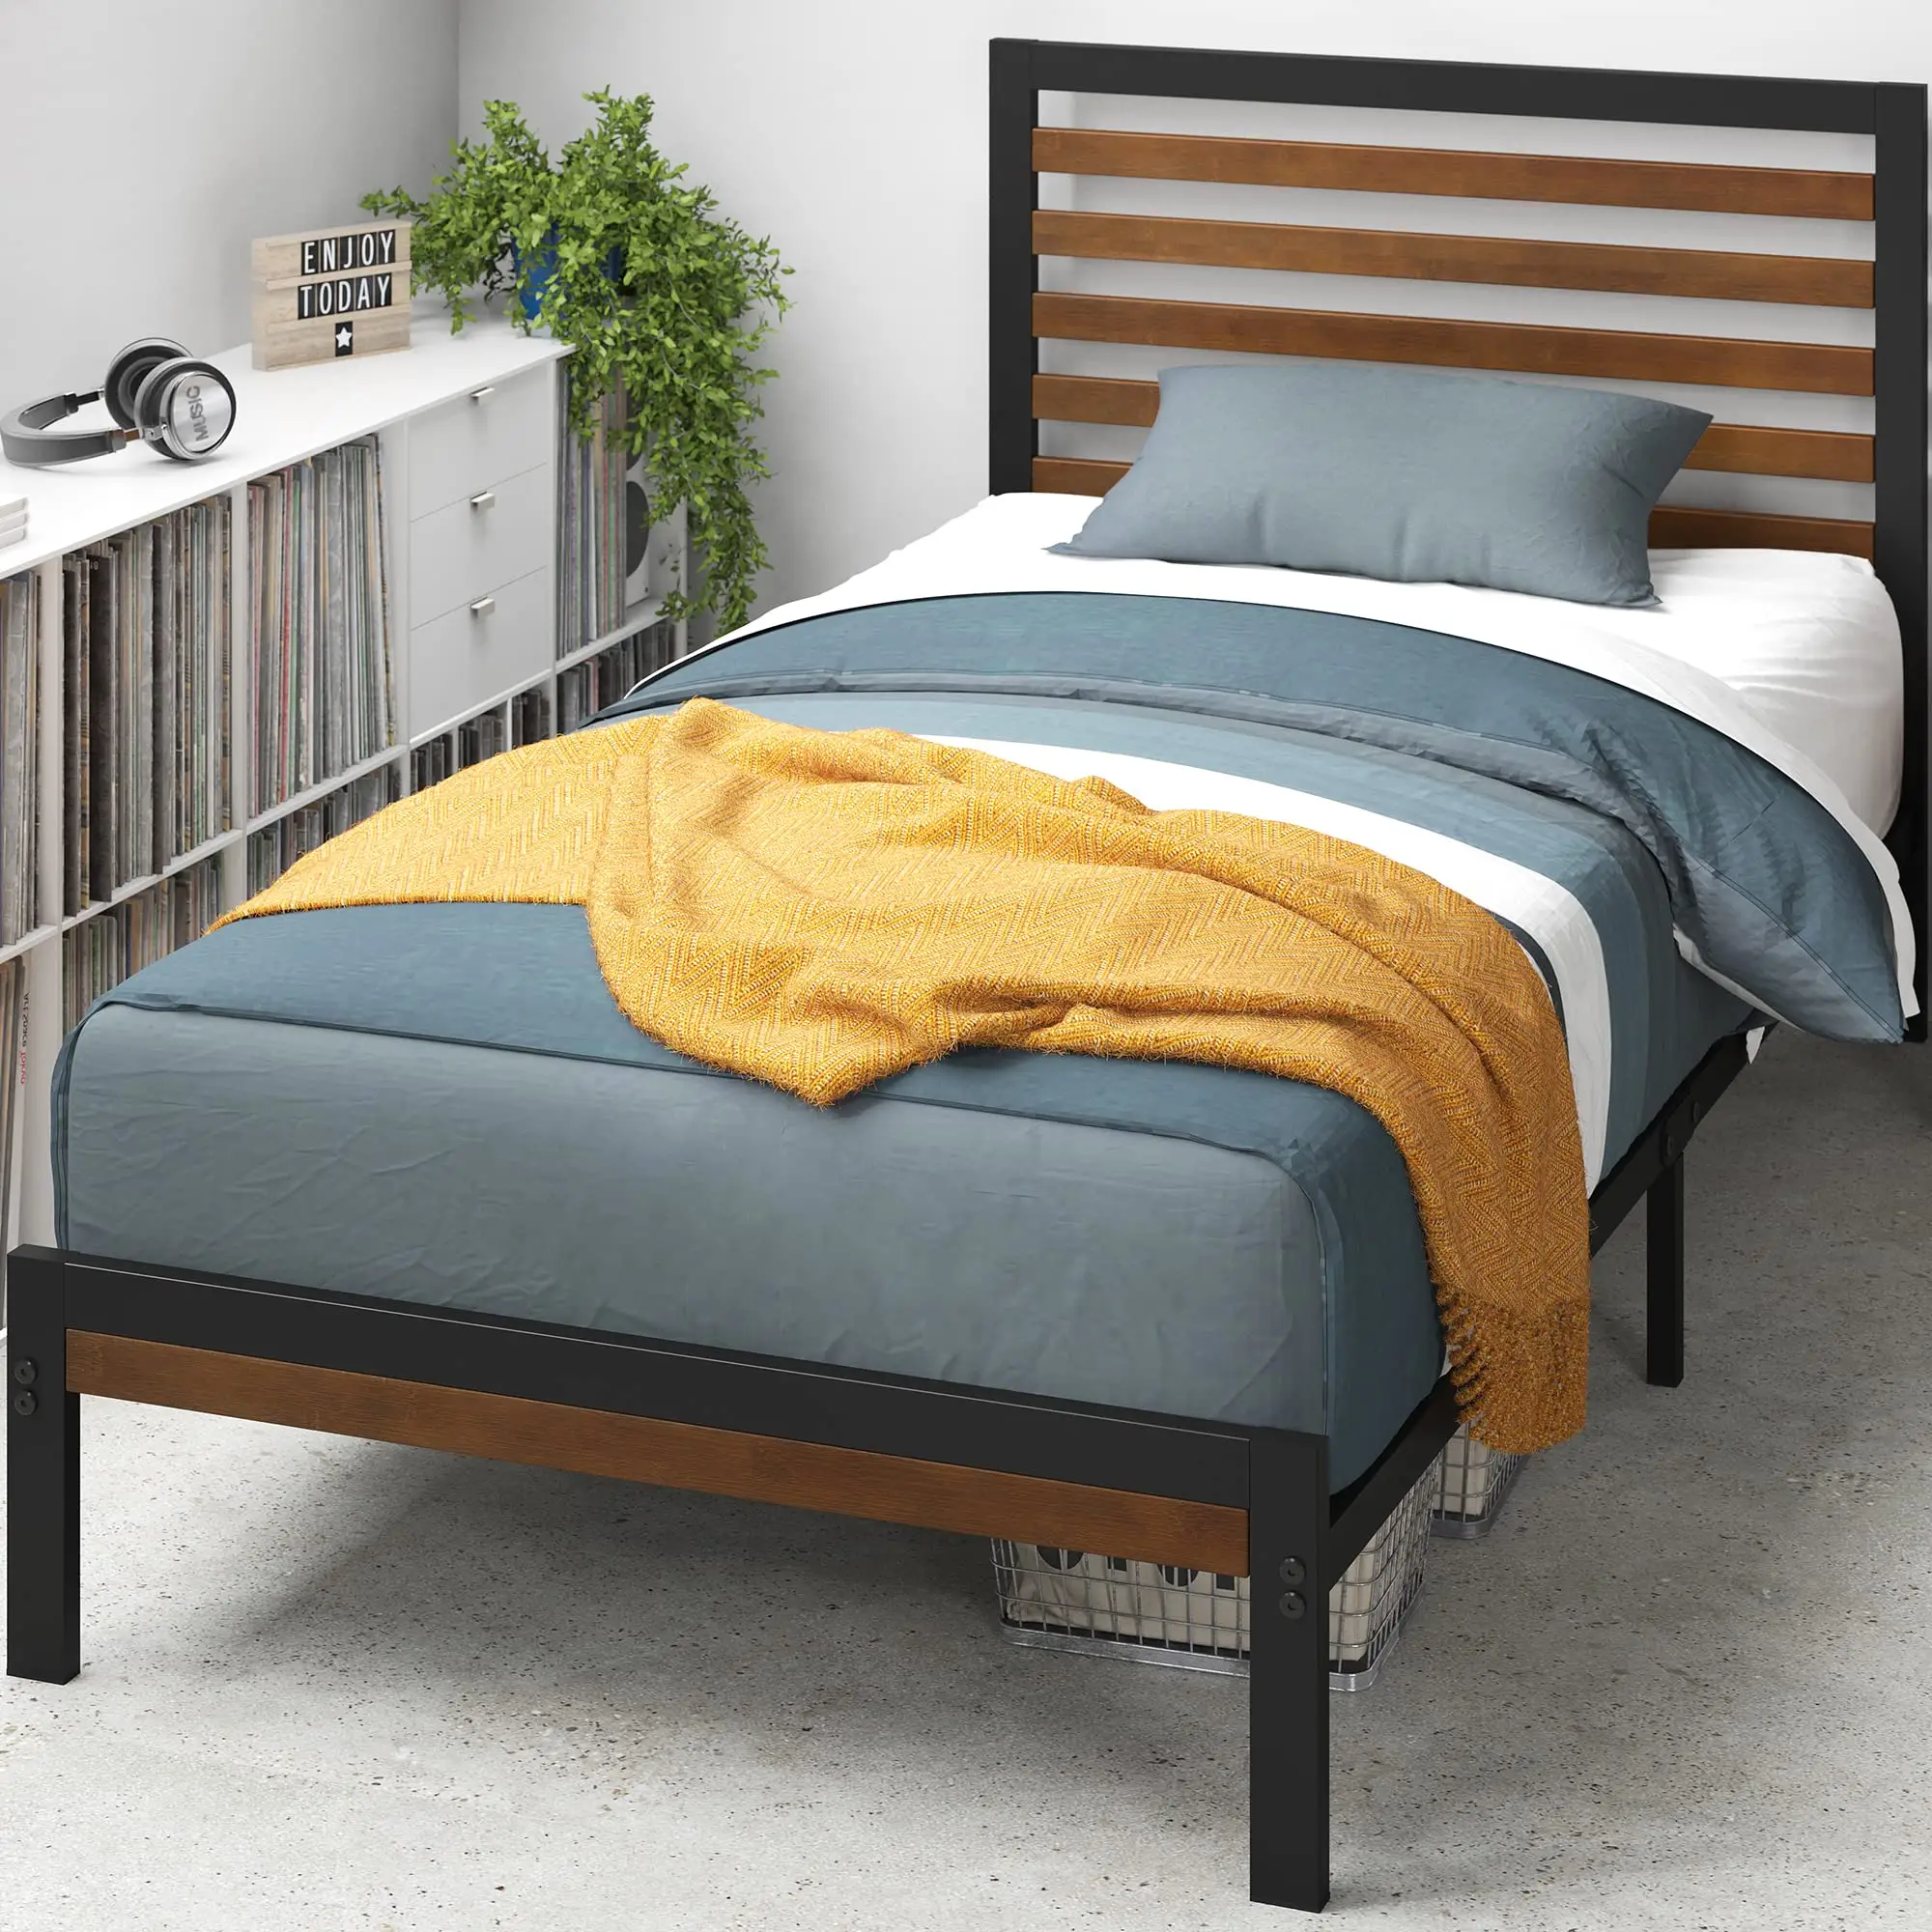 Металлическая платформа Queen Size с деревянным изголовьем, прочные опоры для односпальной кровати